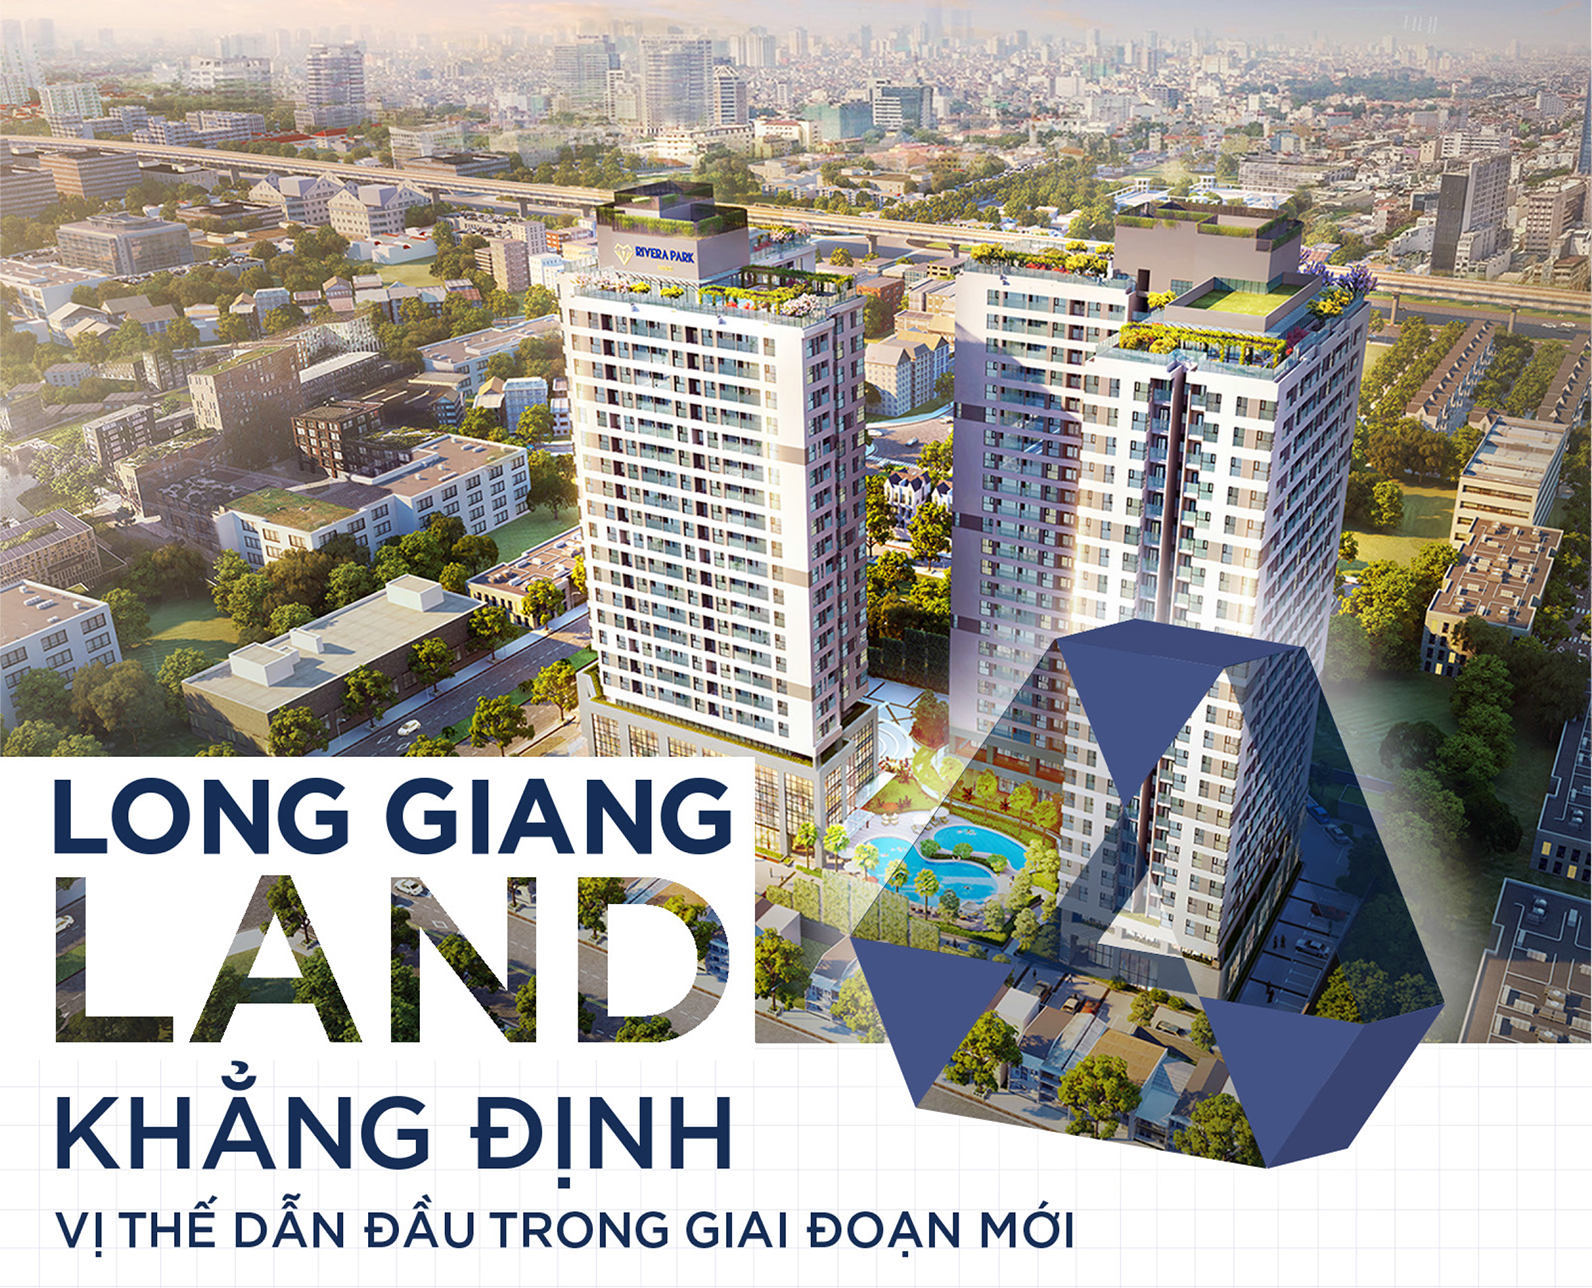 Long Giang Land: Tâm – Thế trở thành nhà phát triển bất động sản chuyên nghiệp